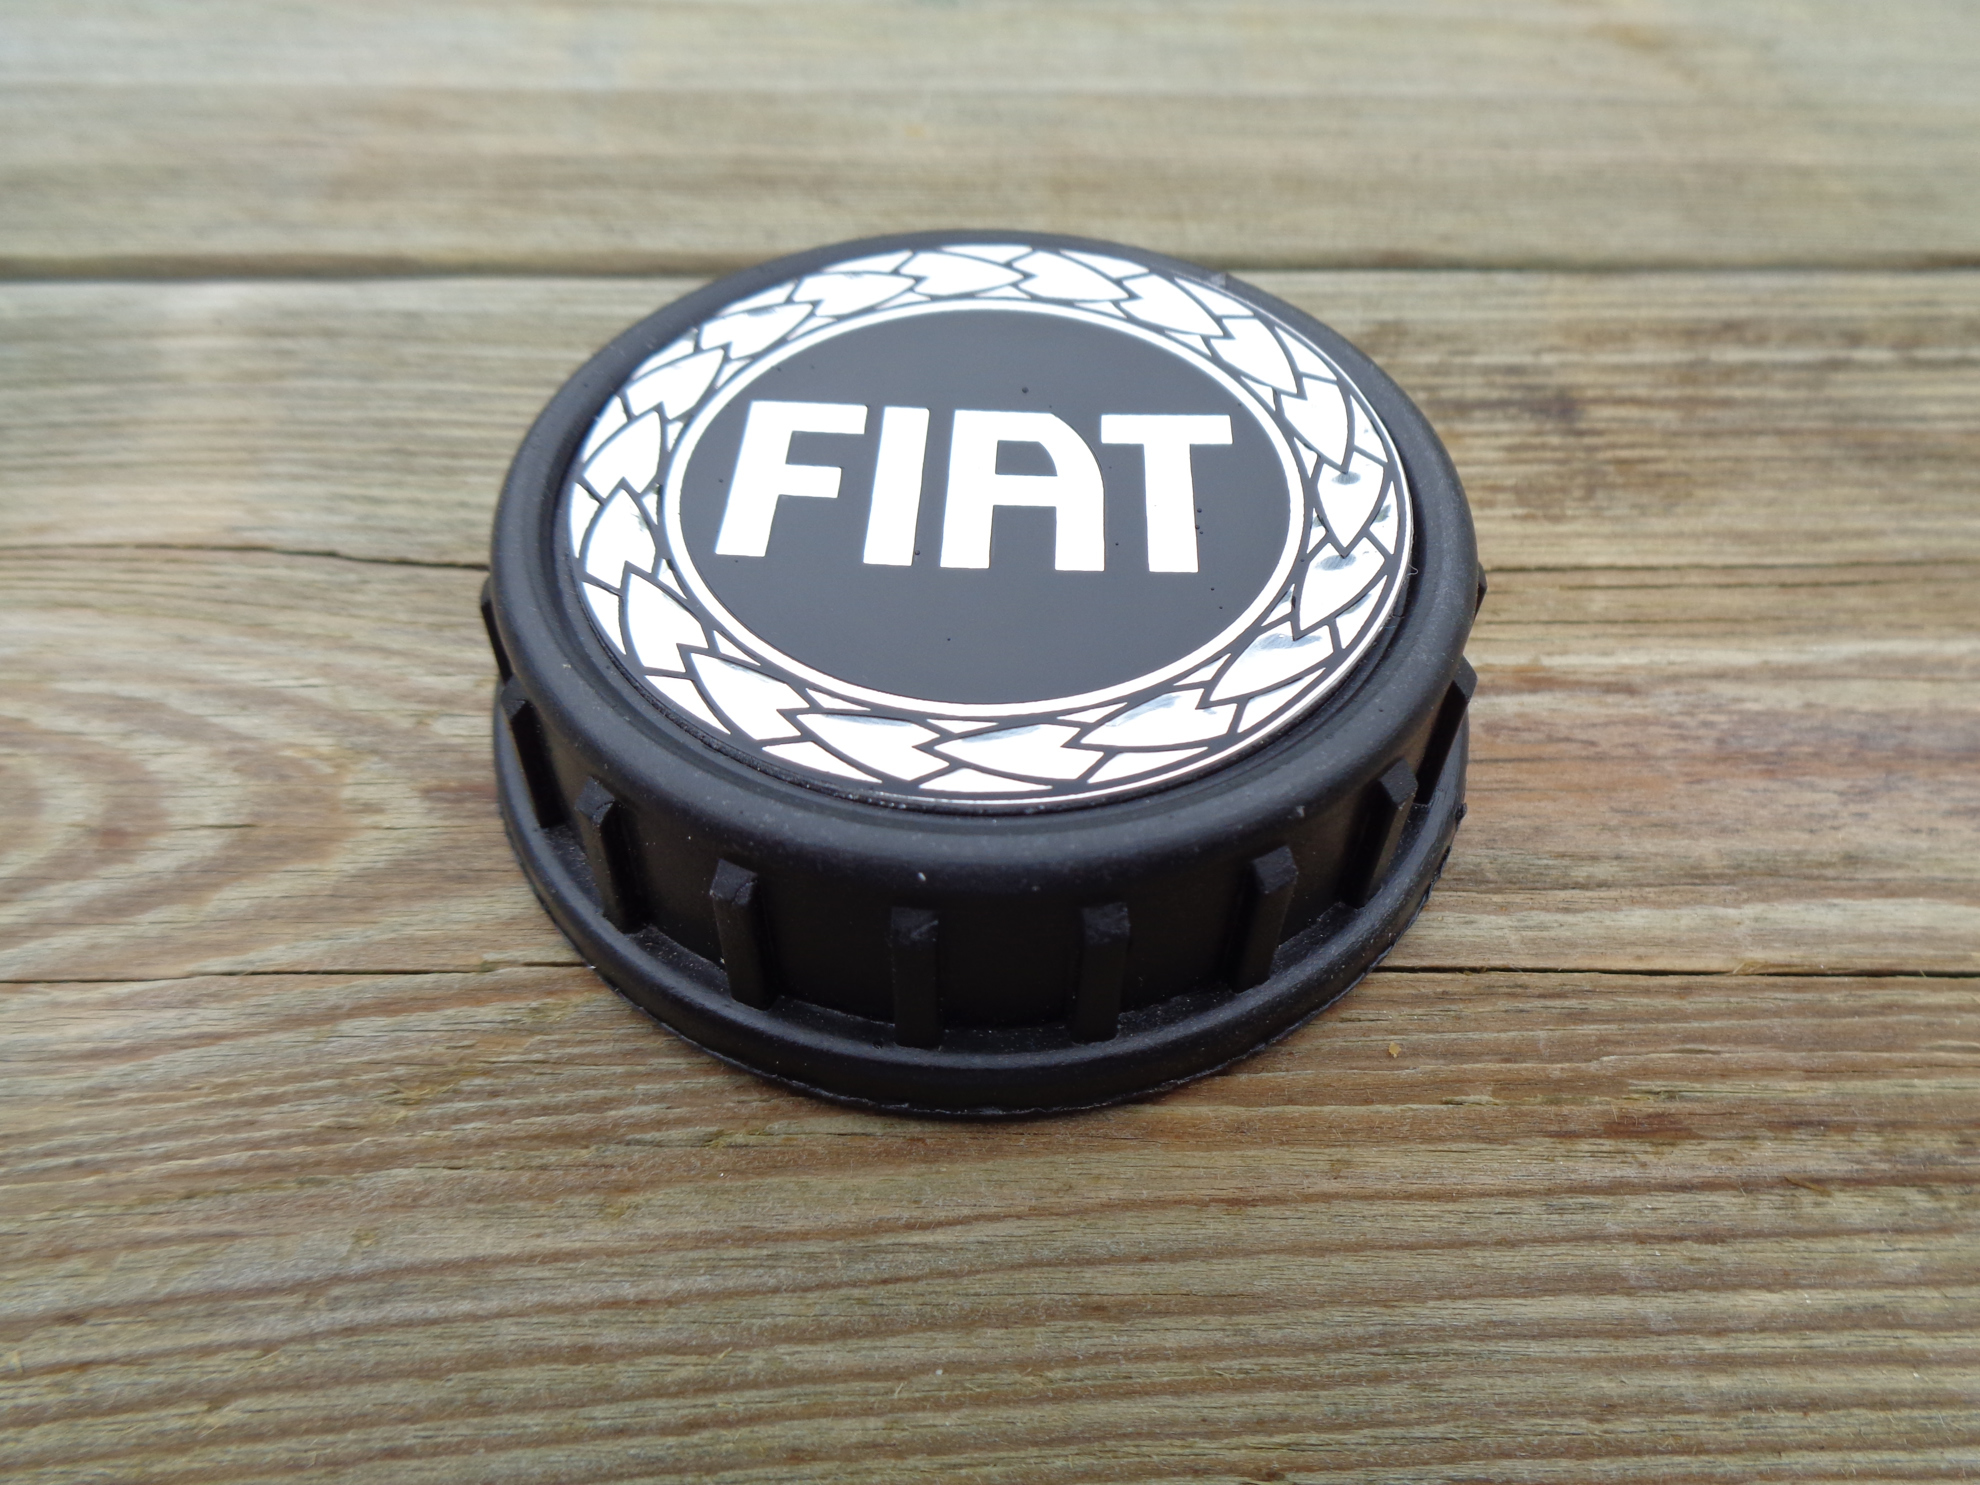 Afbeeldingen van tankdop met FIAT logo en lauwerkrans